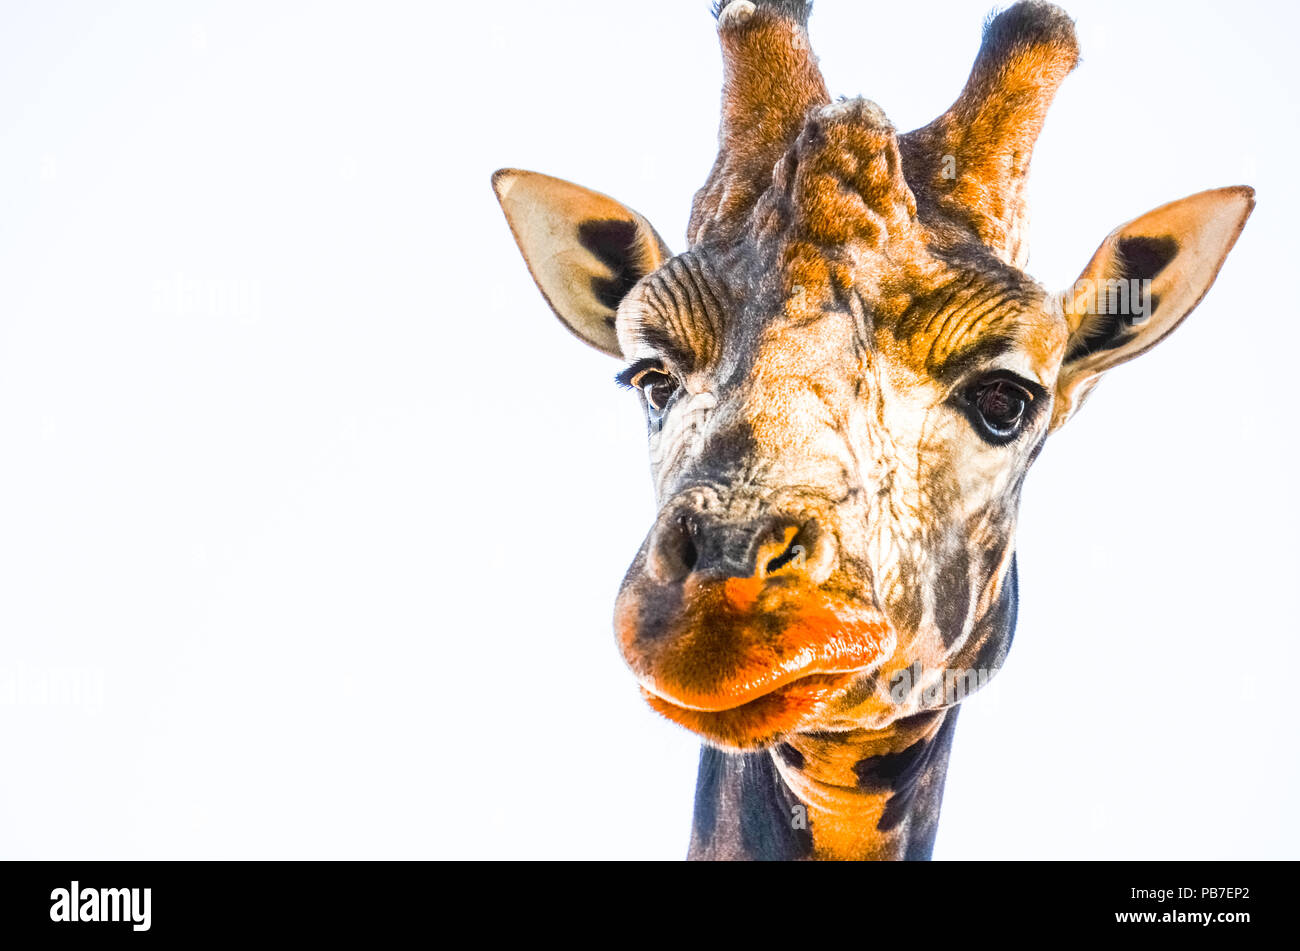 Close up portrait of animal tête de girafe, à la caméra vers le bas isolé sur fond blanc. Girafe curieux avec de grandes lèvres à directement à l'appareil photo. Banque D'Images